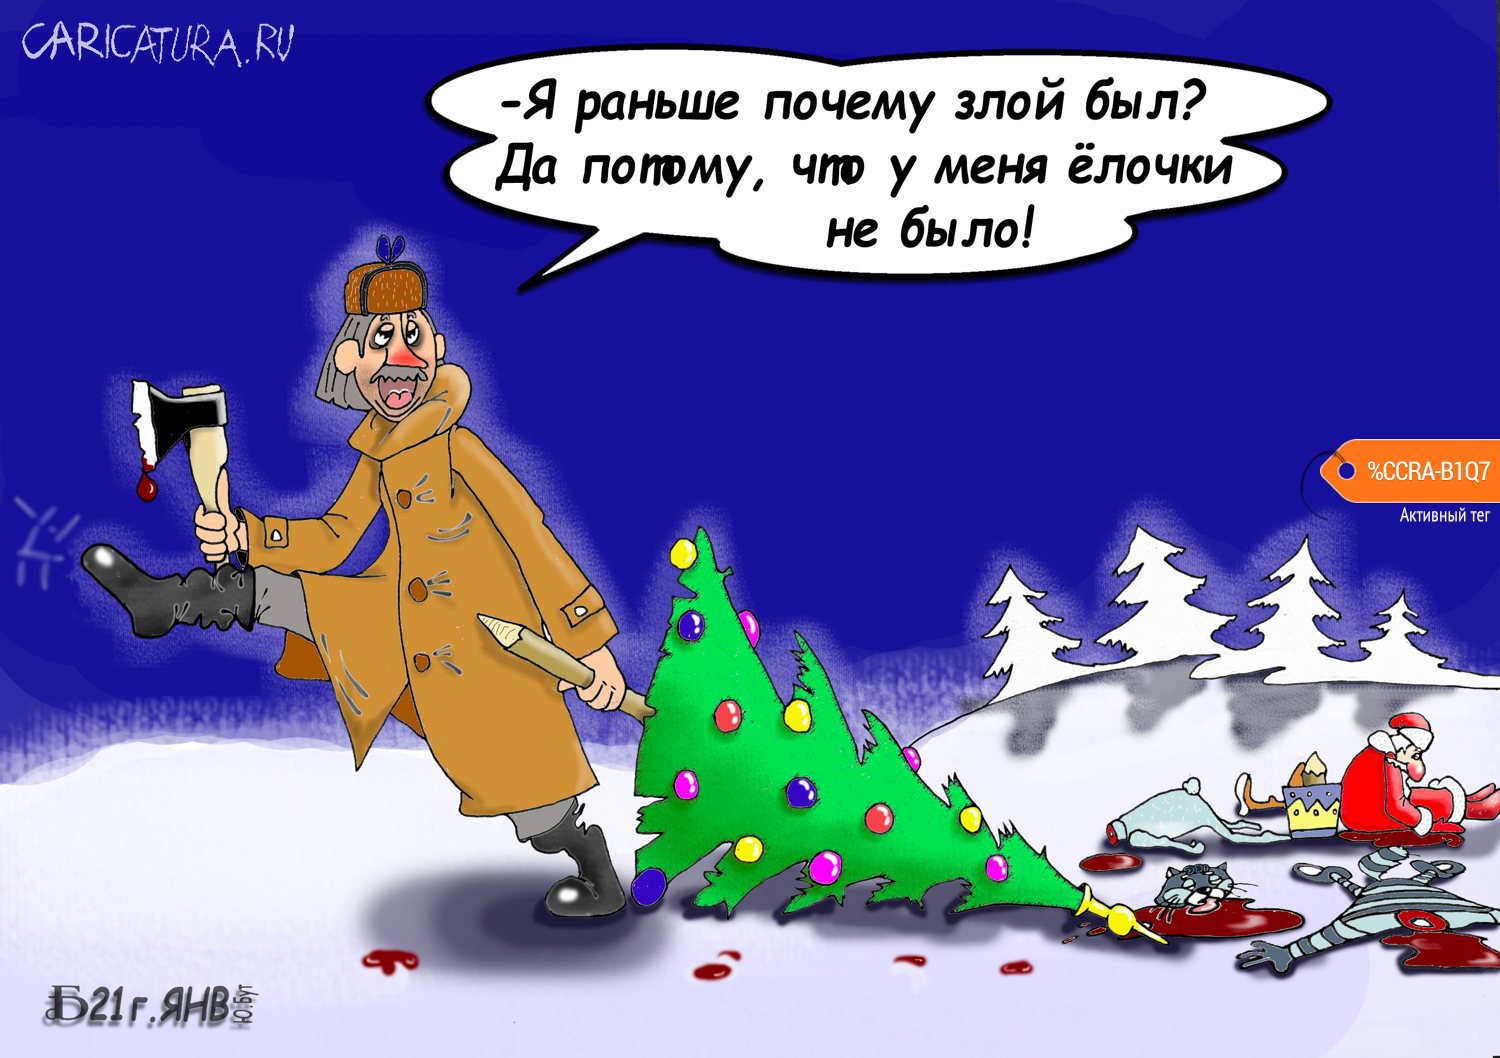 Карикатура "Про послесловие", Борис Демин